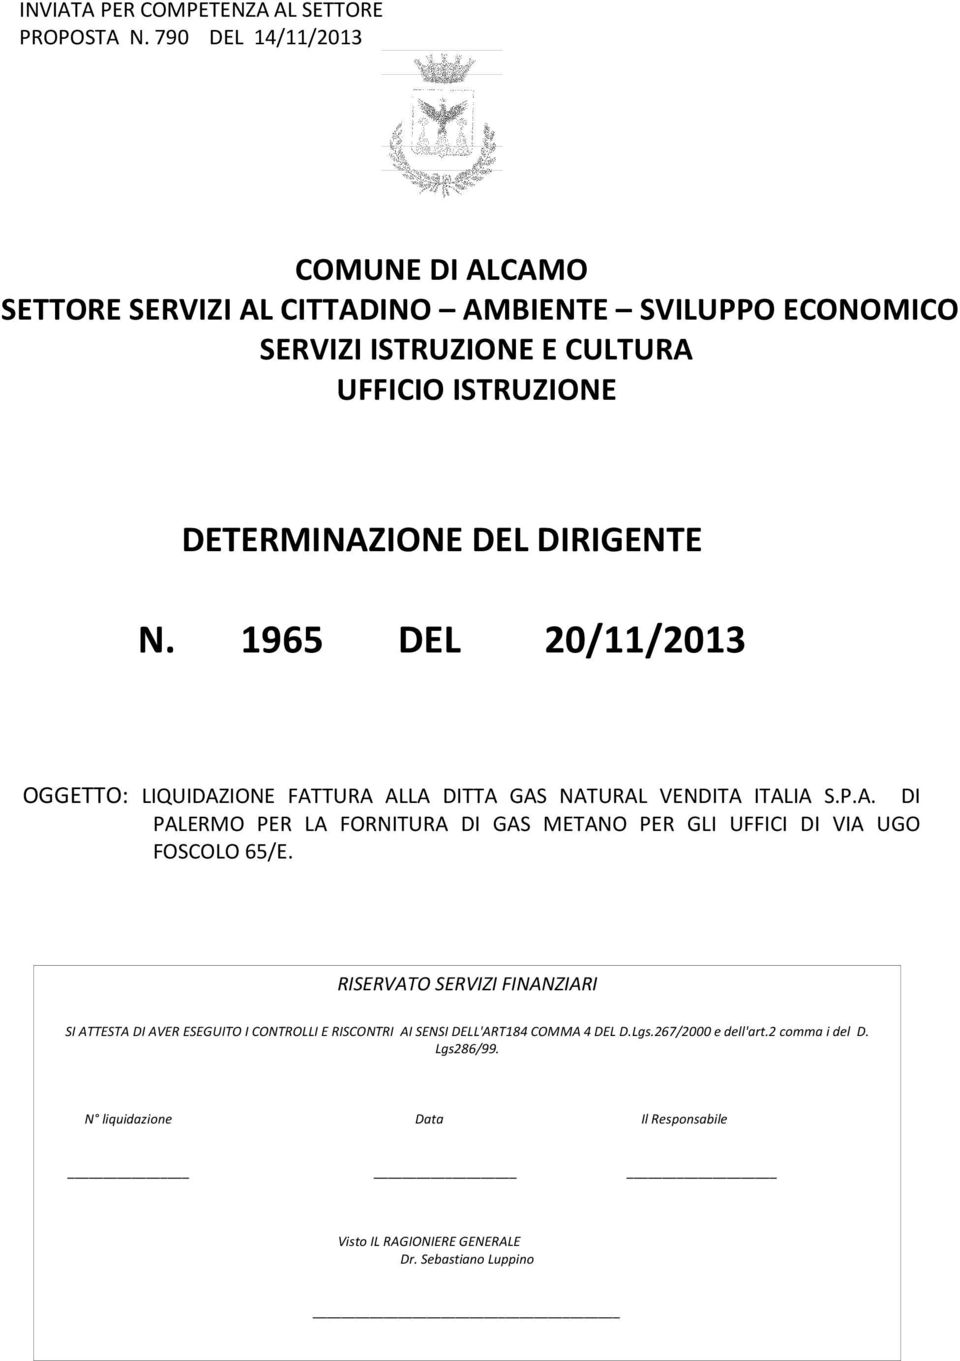 DIRIGENTE N. 1965 DEL 20/11/2013 OGGETTO: LIQUIDAZIONE FATTURA ALLA DITTA GAS NATURAL VENDITA ITALIA S.P.A. DI PALERMO PER LA FORNITURA DI GAS METANO PER GLI UFFICI DI VIA UGO FOSCOLO 65/E.